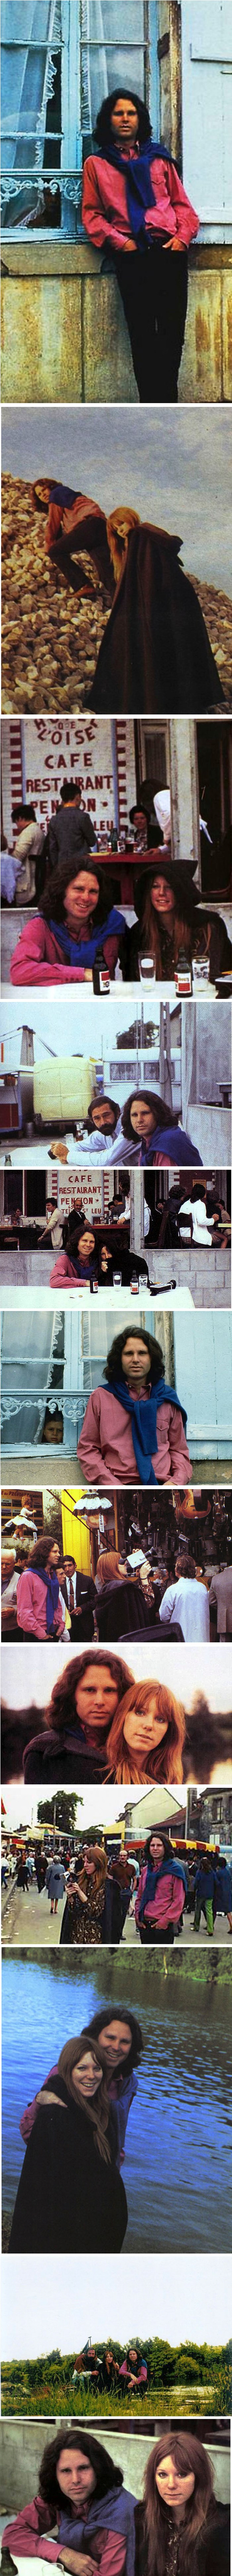 Posljednje fotografije Jim Morrisona vjerojatno nisu ono što biste očekivali od rock zvijezde